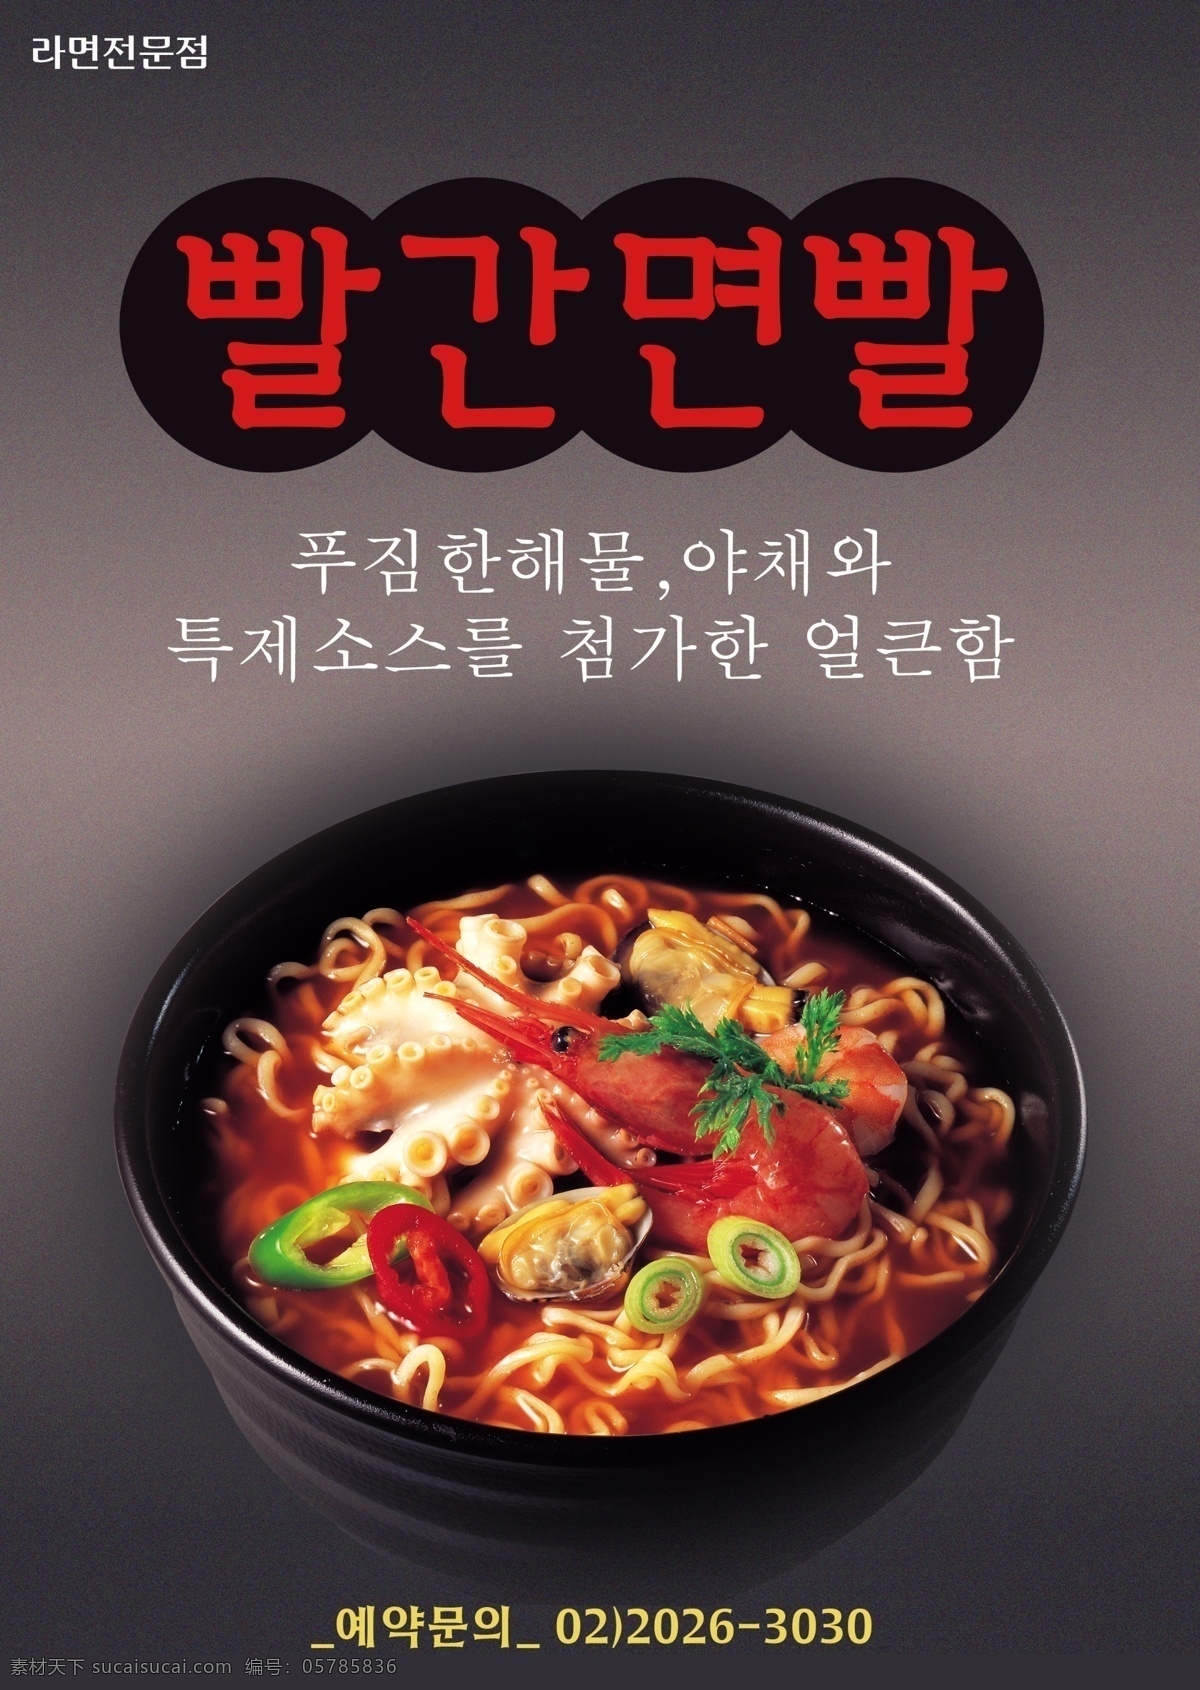 韩国 海鲜 面条 海报 psd素材 韩国料理 美食 美食海报 面条海报 其他海报设计